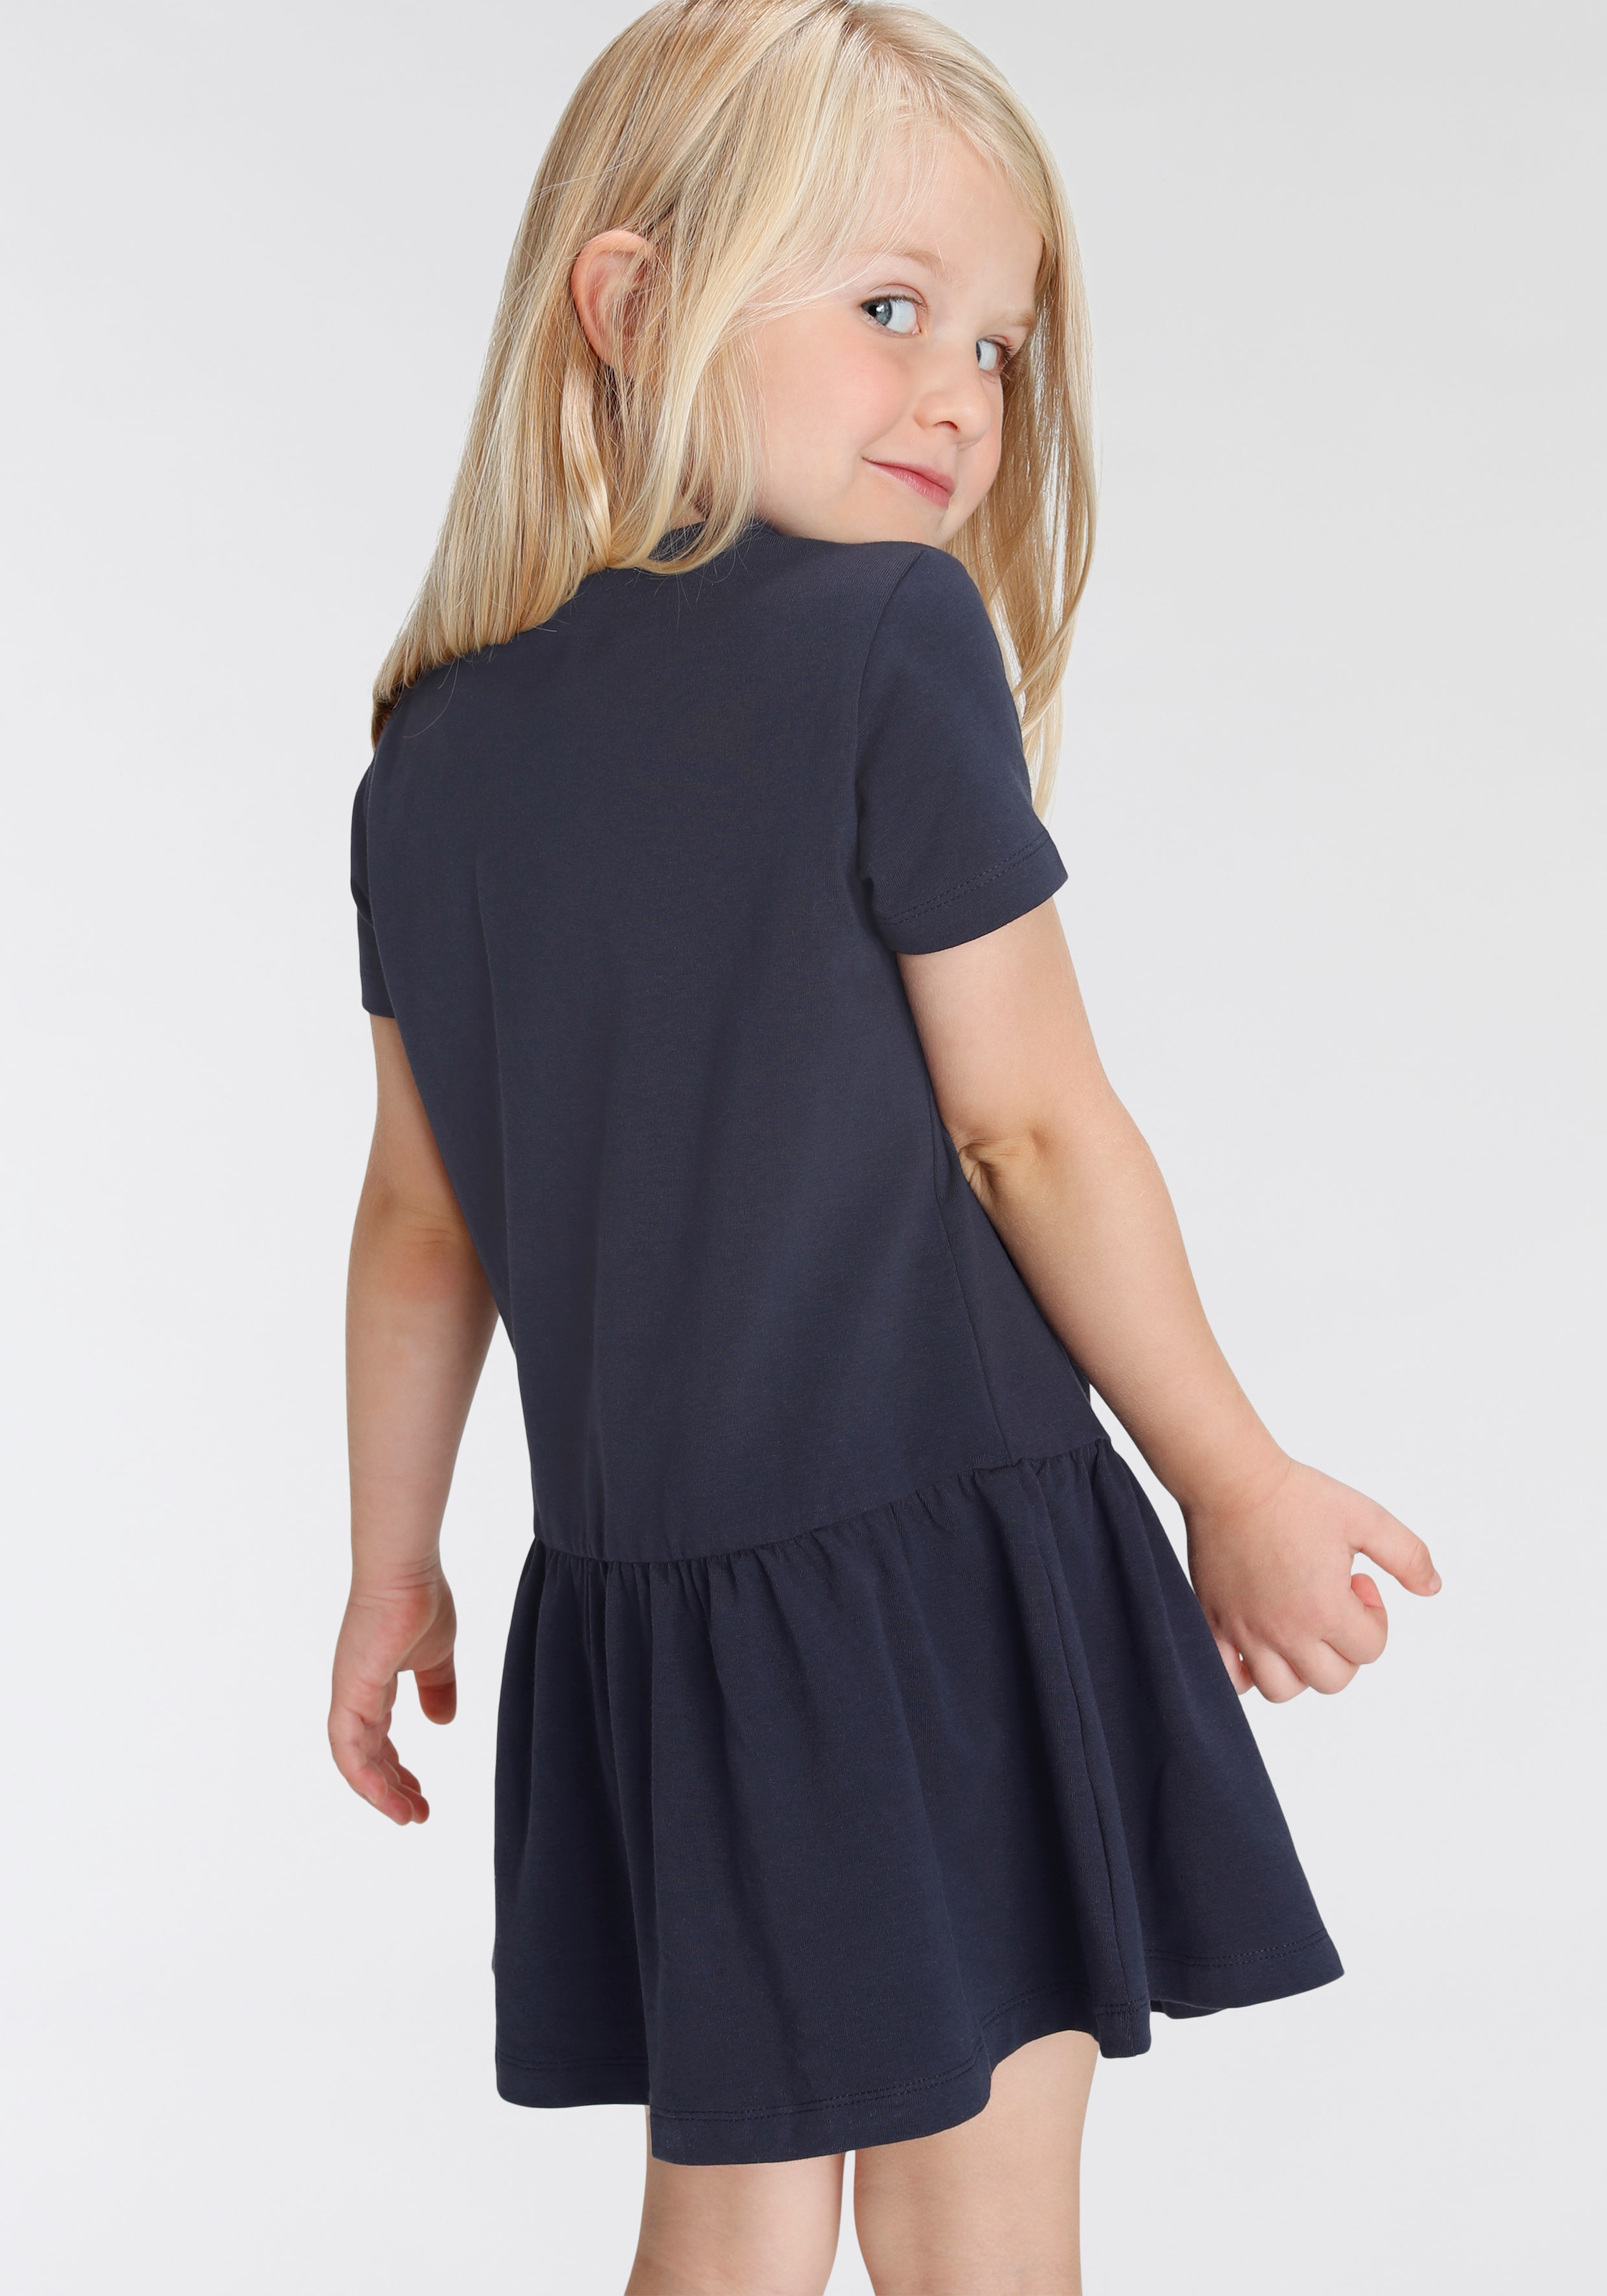 Trendige KIDSWORLD Jerseykleid am Volant bestellen mit - Mindestbestellwert ohne Saum »Einhorn«, versandkostenfrei süssem